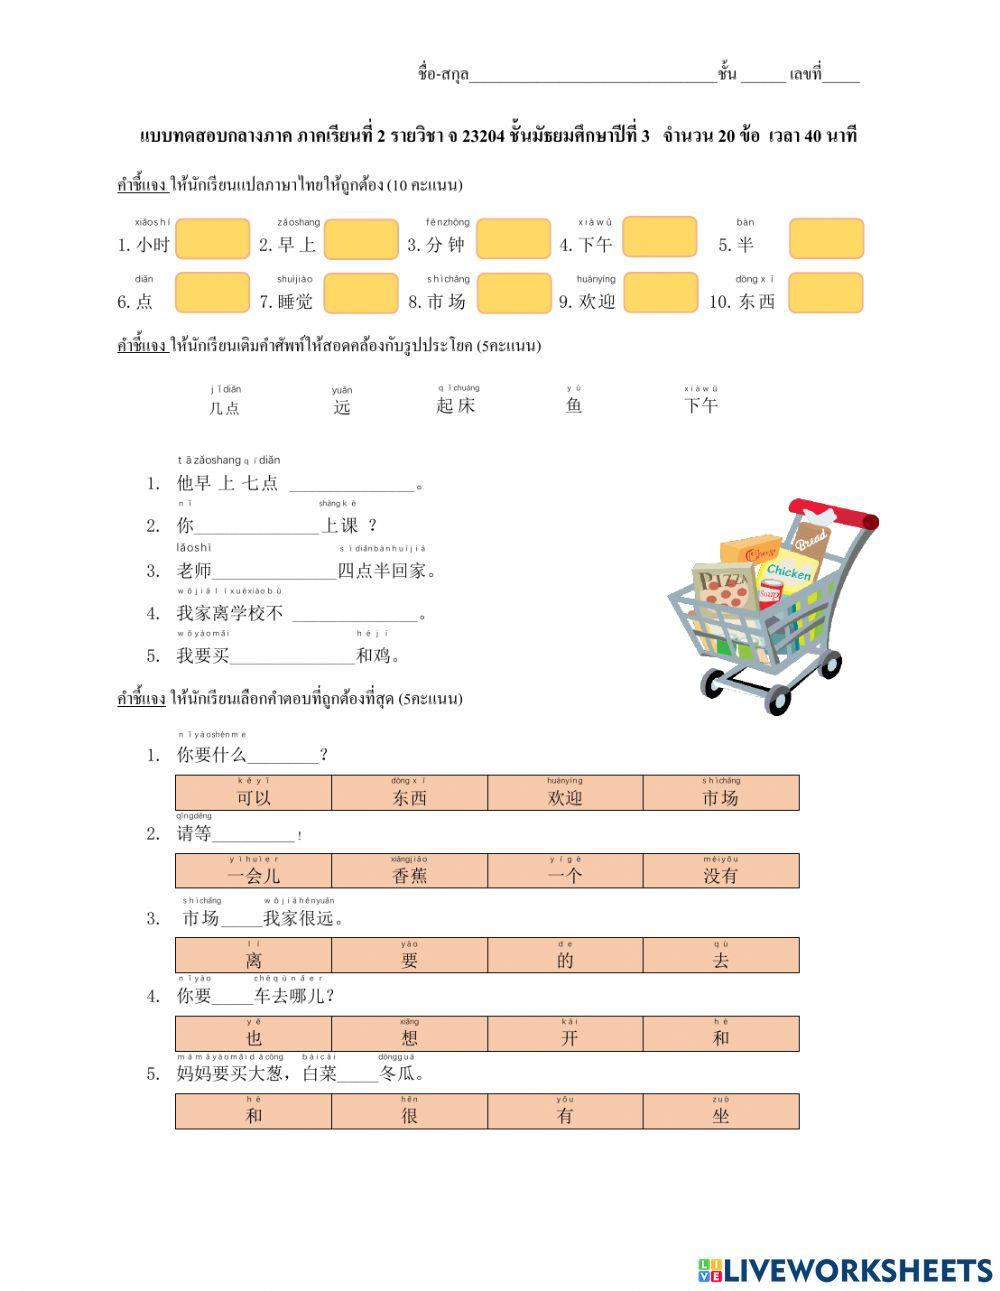 Chinese exam